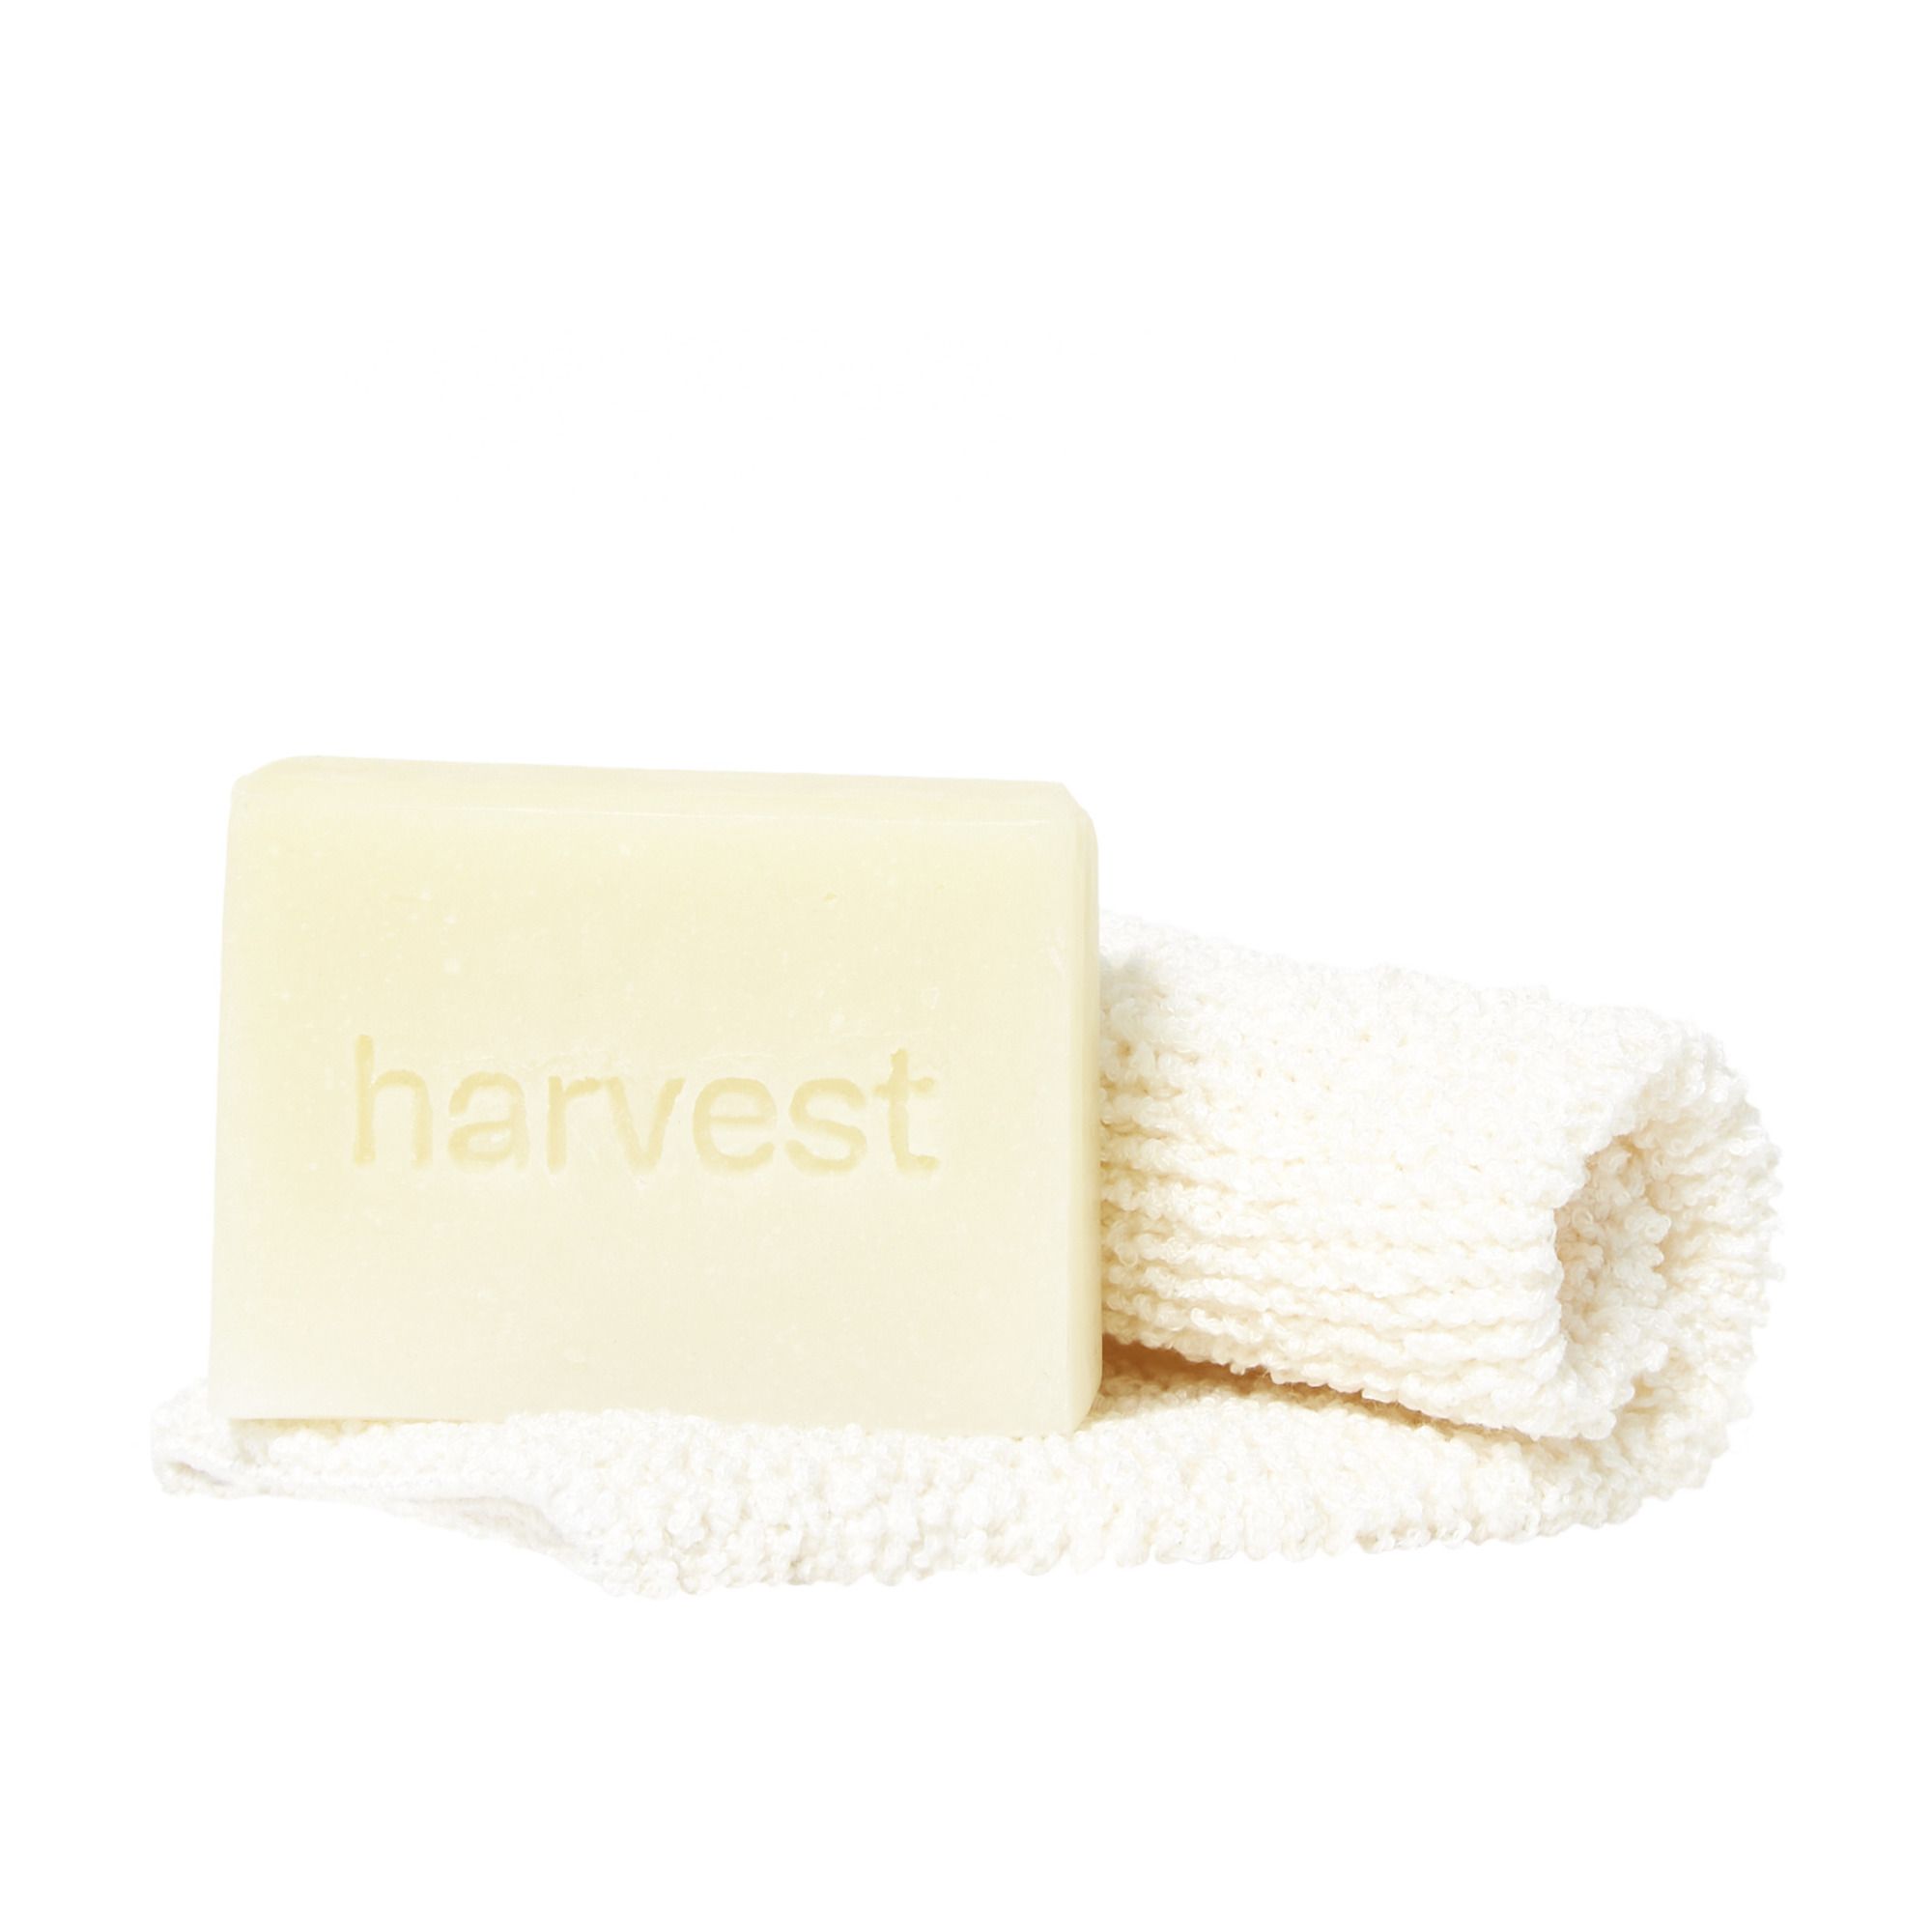 Harvest Skincare - Savon Monoï et Karité et gant exfoliant - 100 g - Jaune